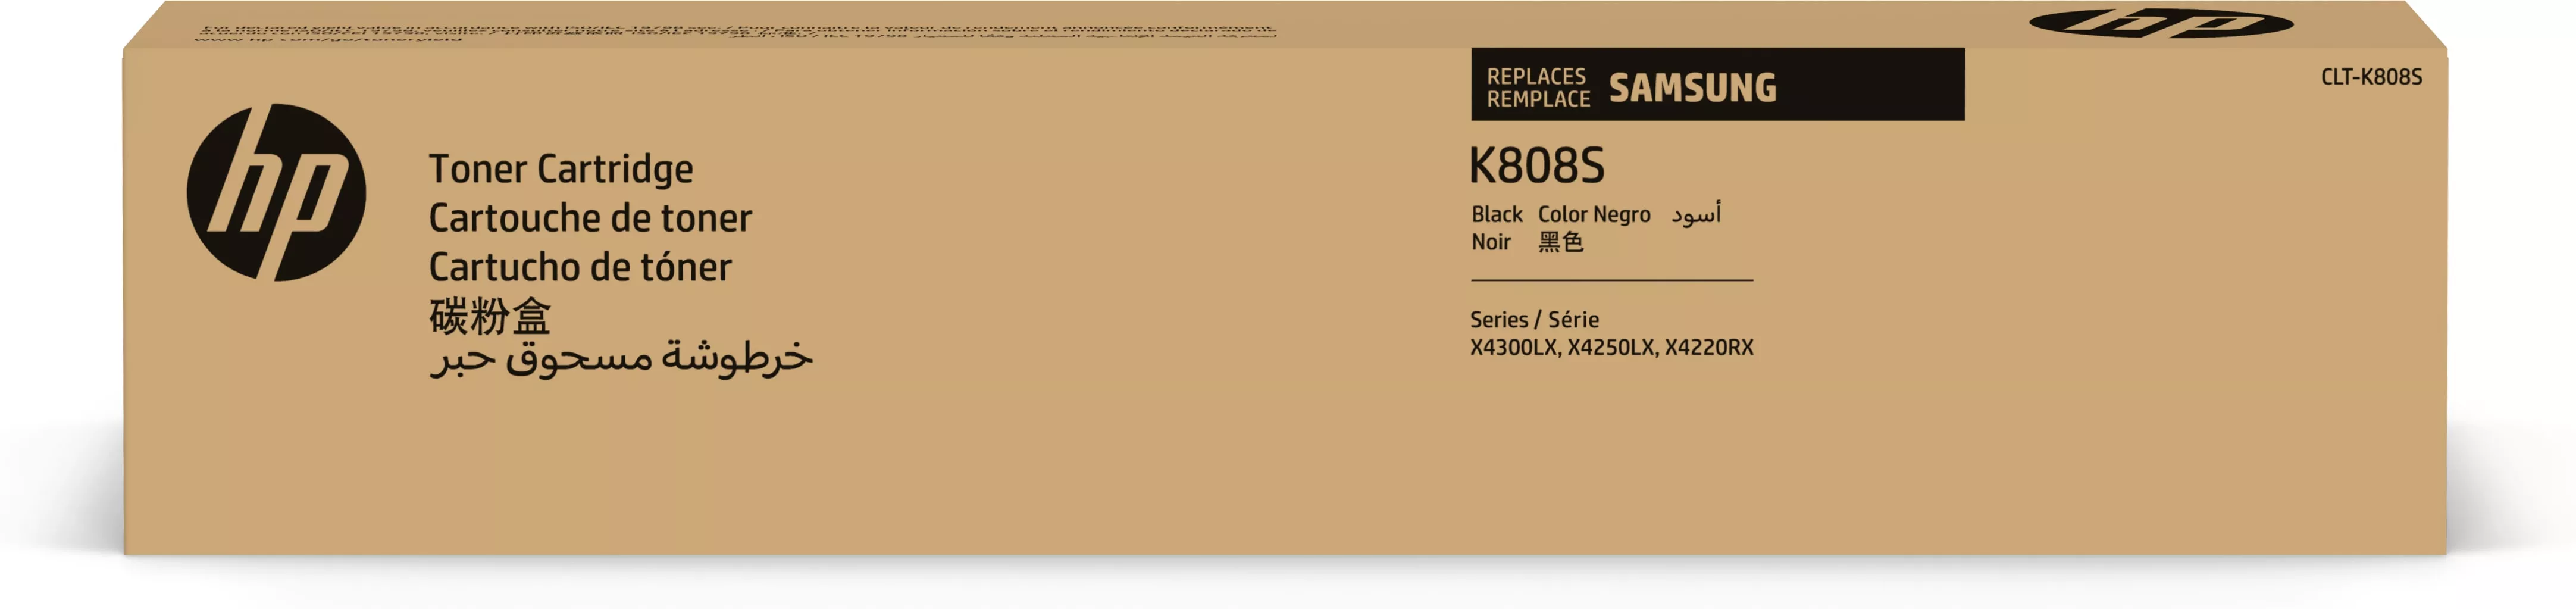 Achat SAMSUNG CLT-K808S/ELS Black Toner Cartridge HP au meilleur prix